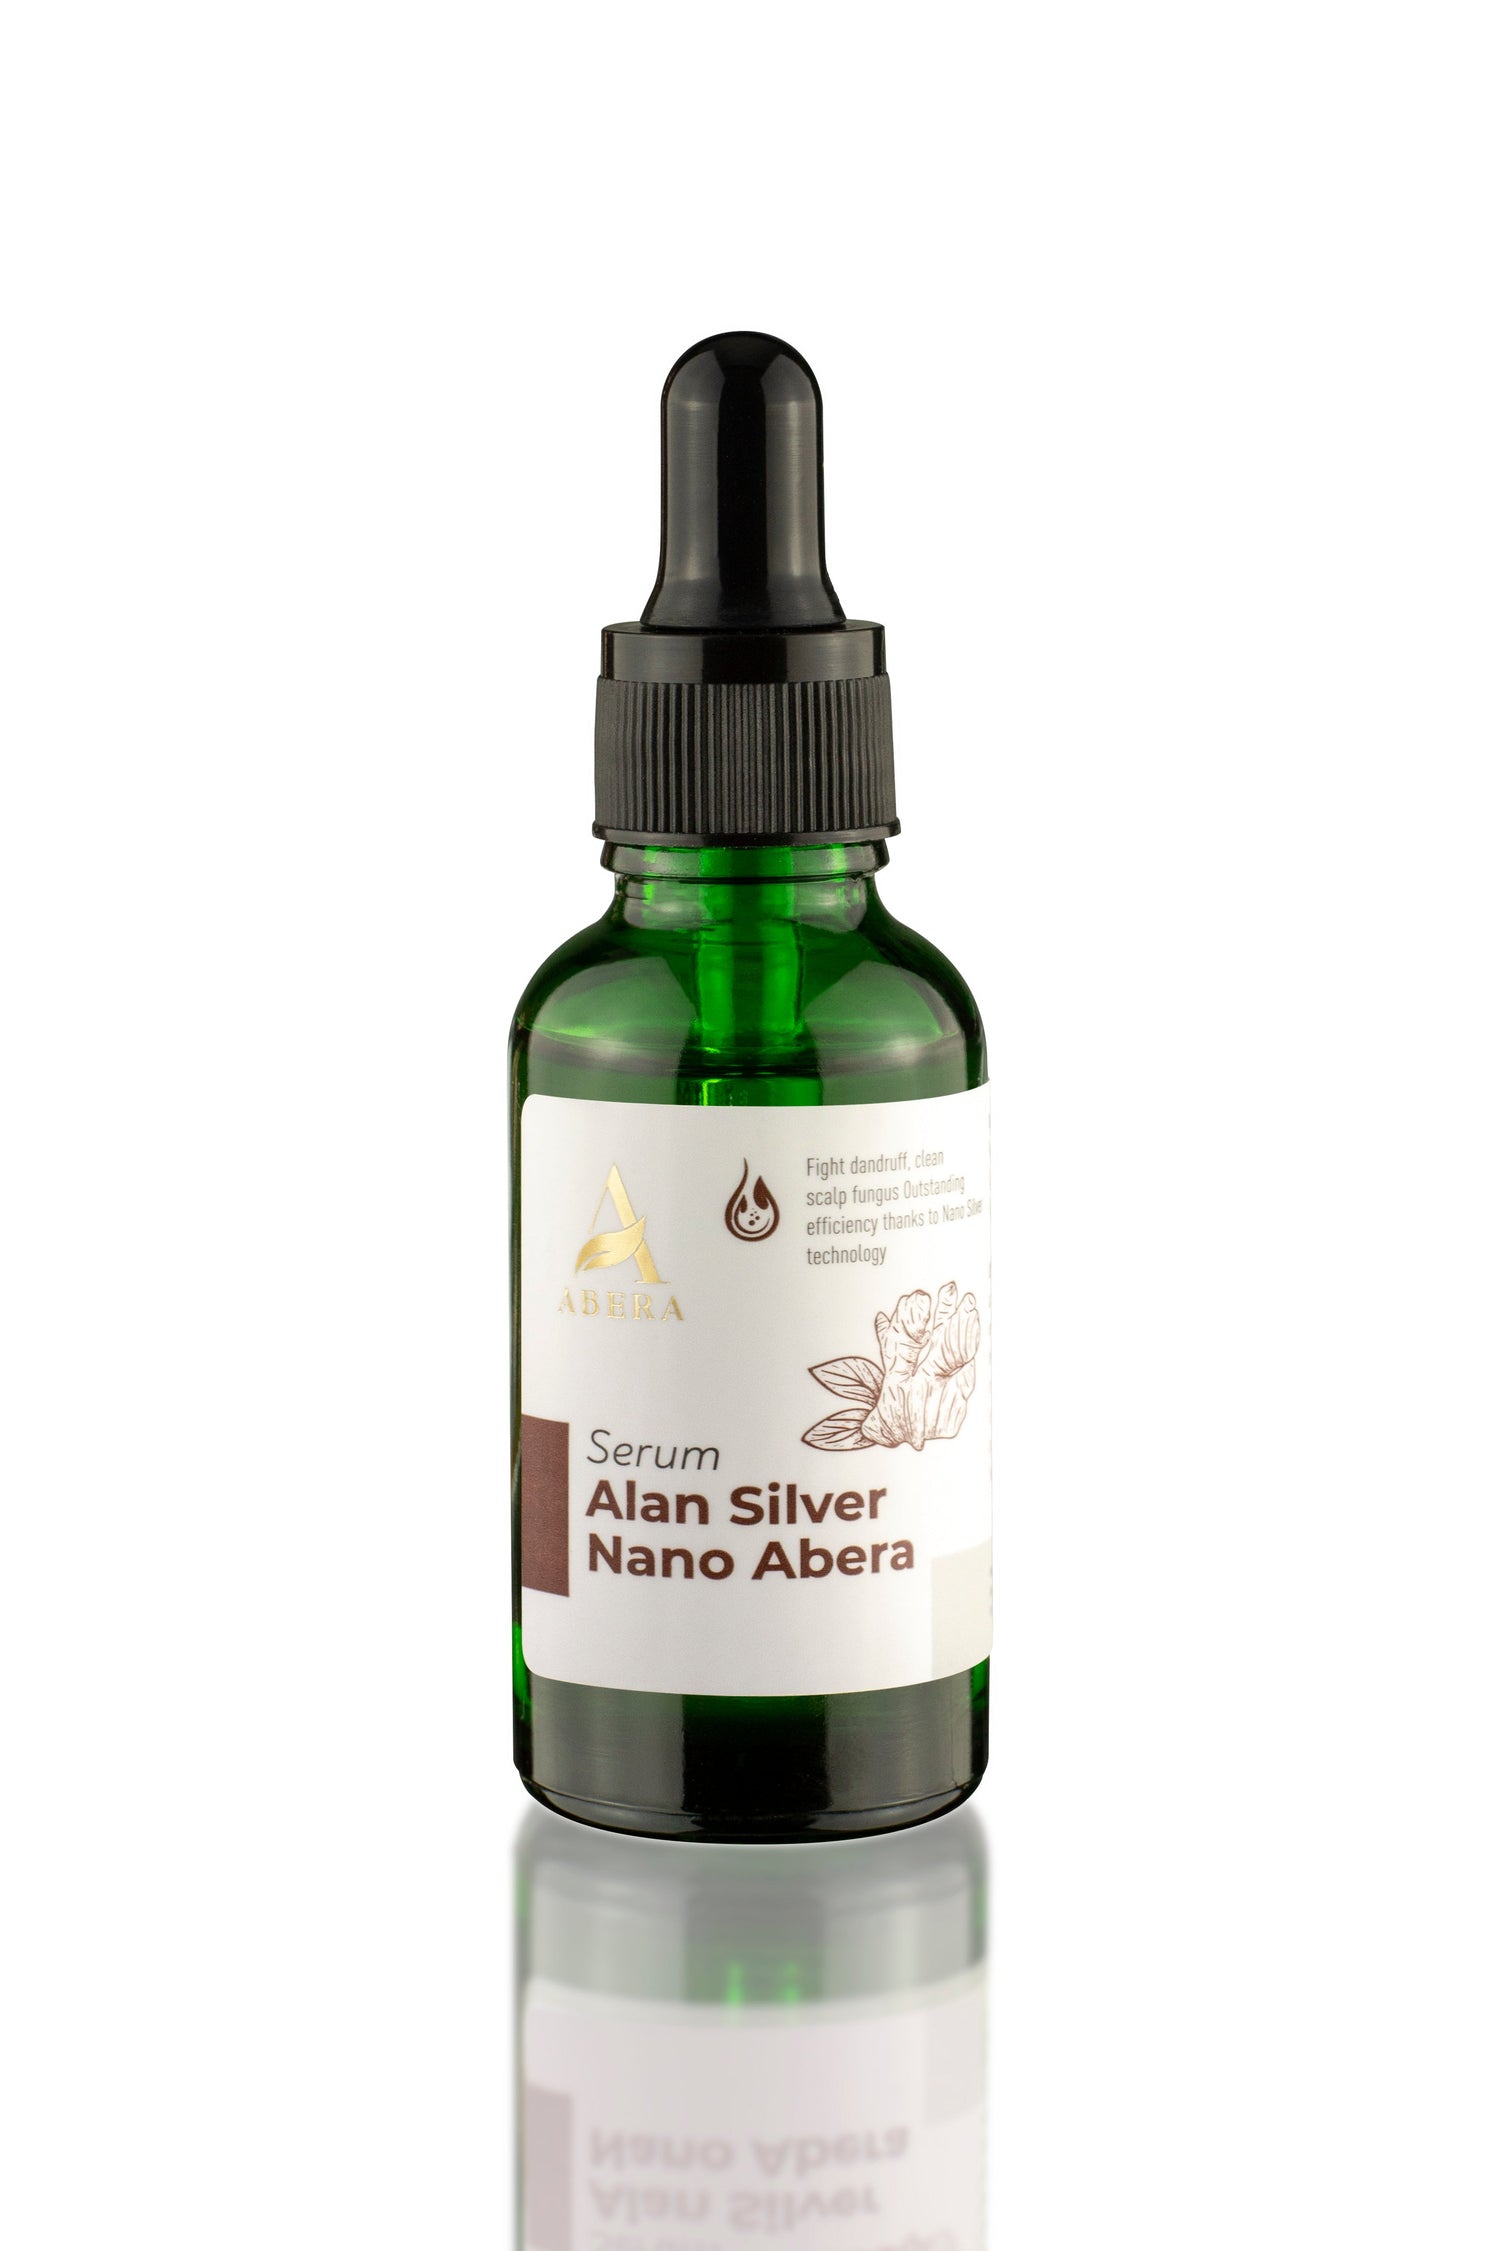 Serum Alan Silver Nano Abera - DDFB